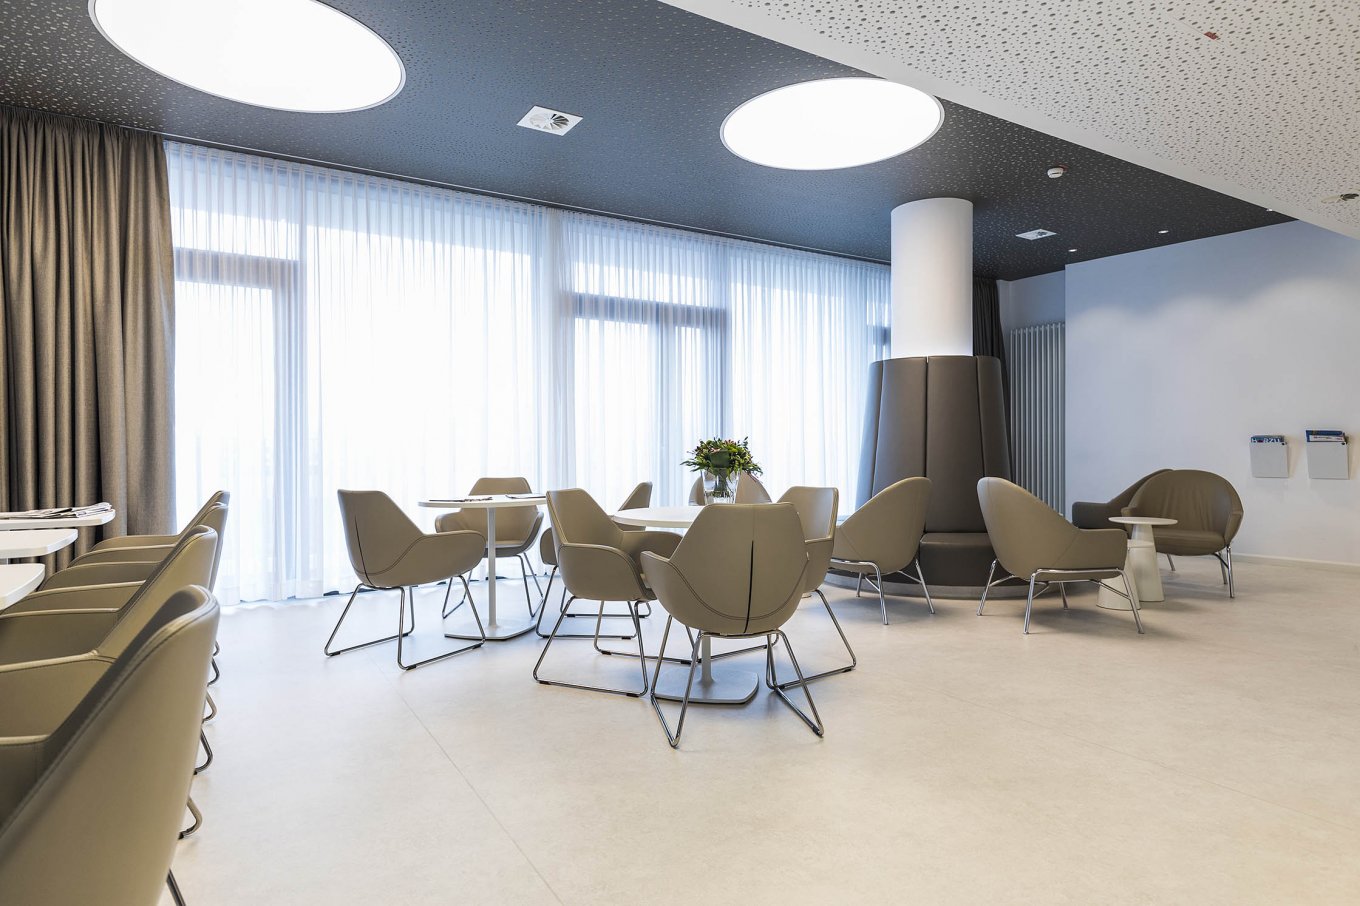 wineo Purline Bioboden Rollenware hell Wartebereich große Fenster Sitzmöbel braun modern Klinikum